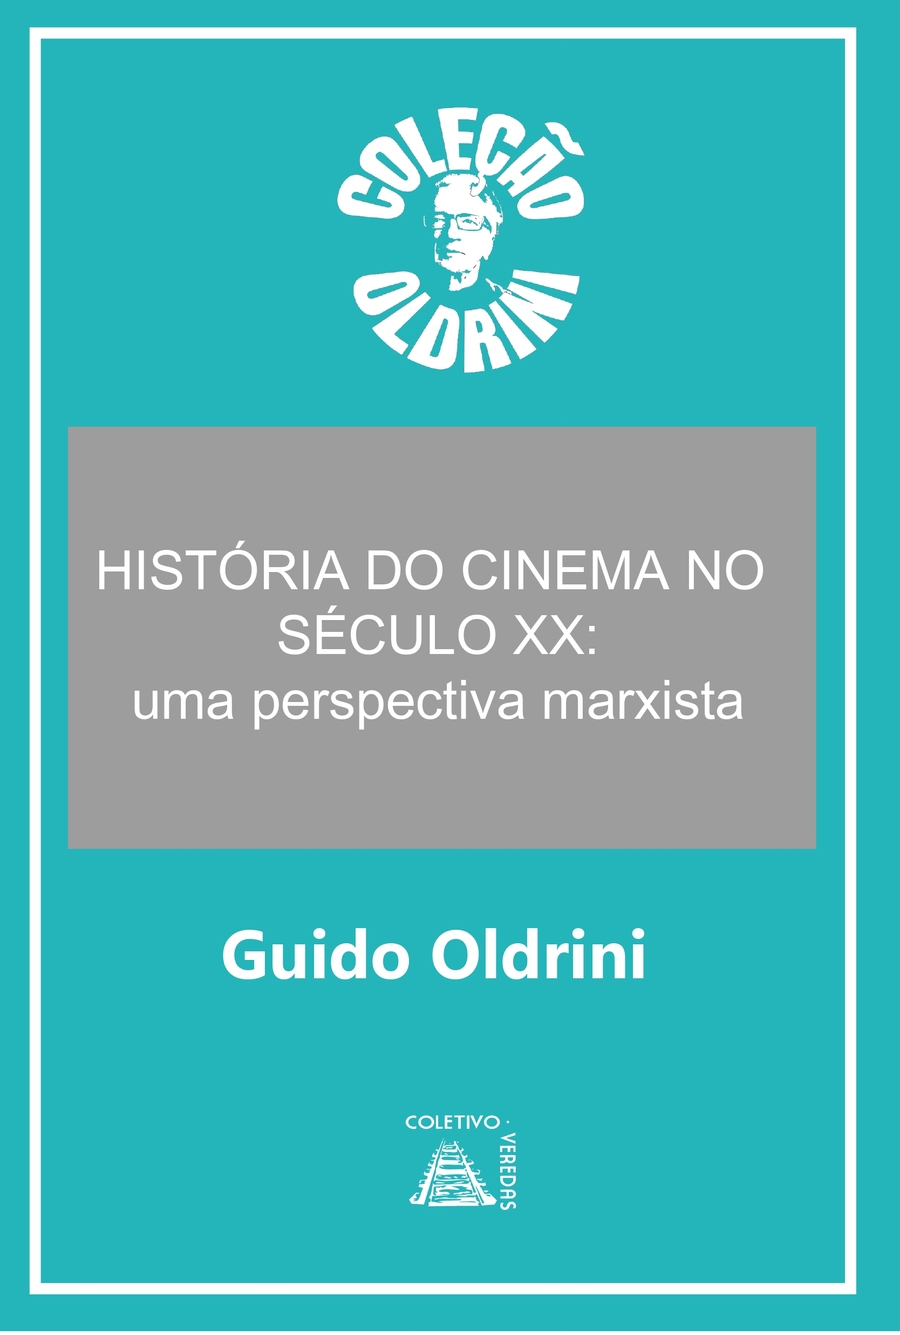 Lançamento do Livro "História do Cinema no Século XX"